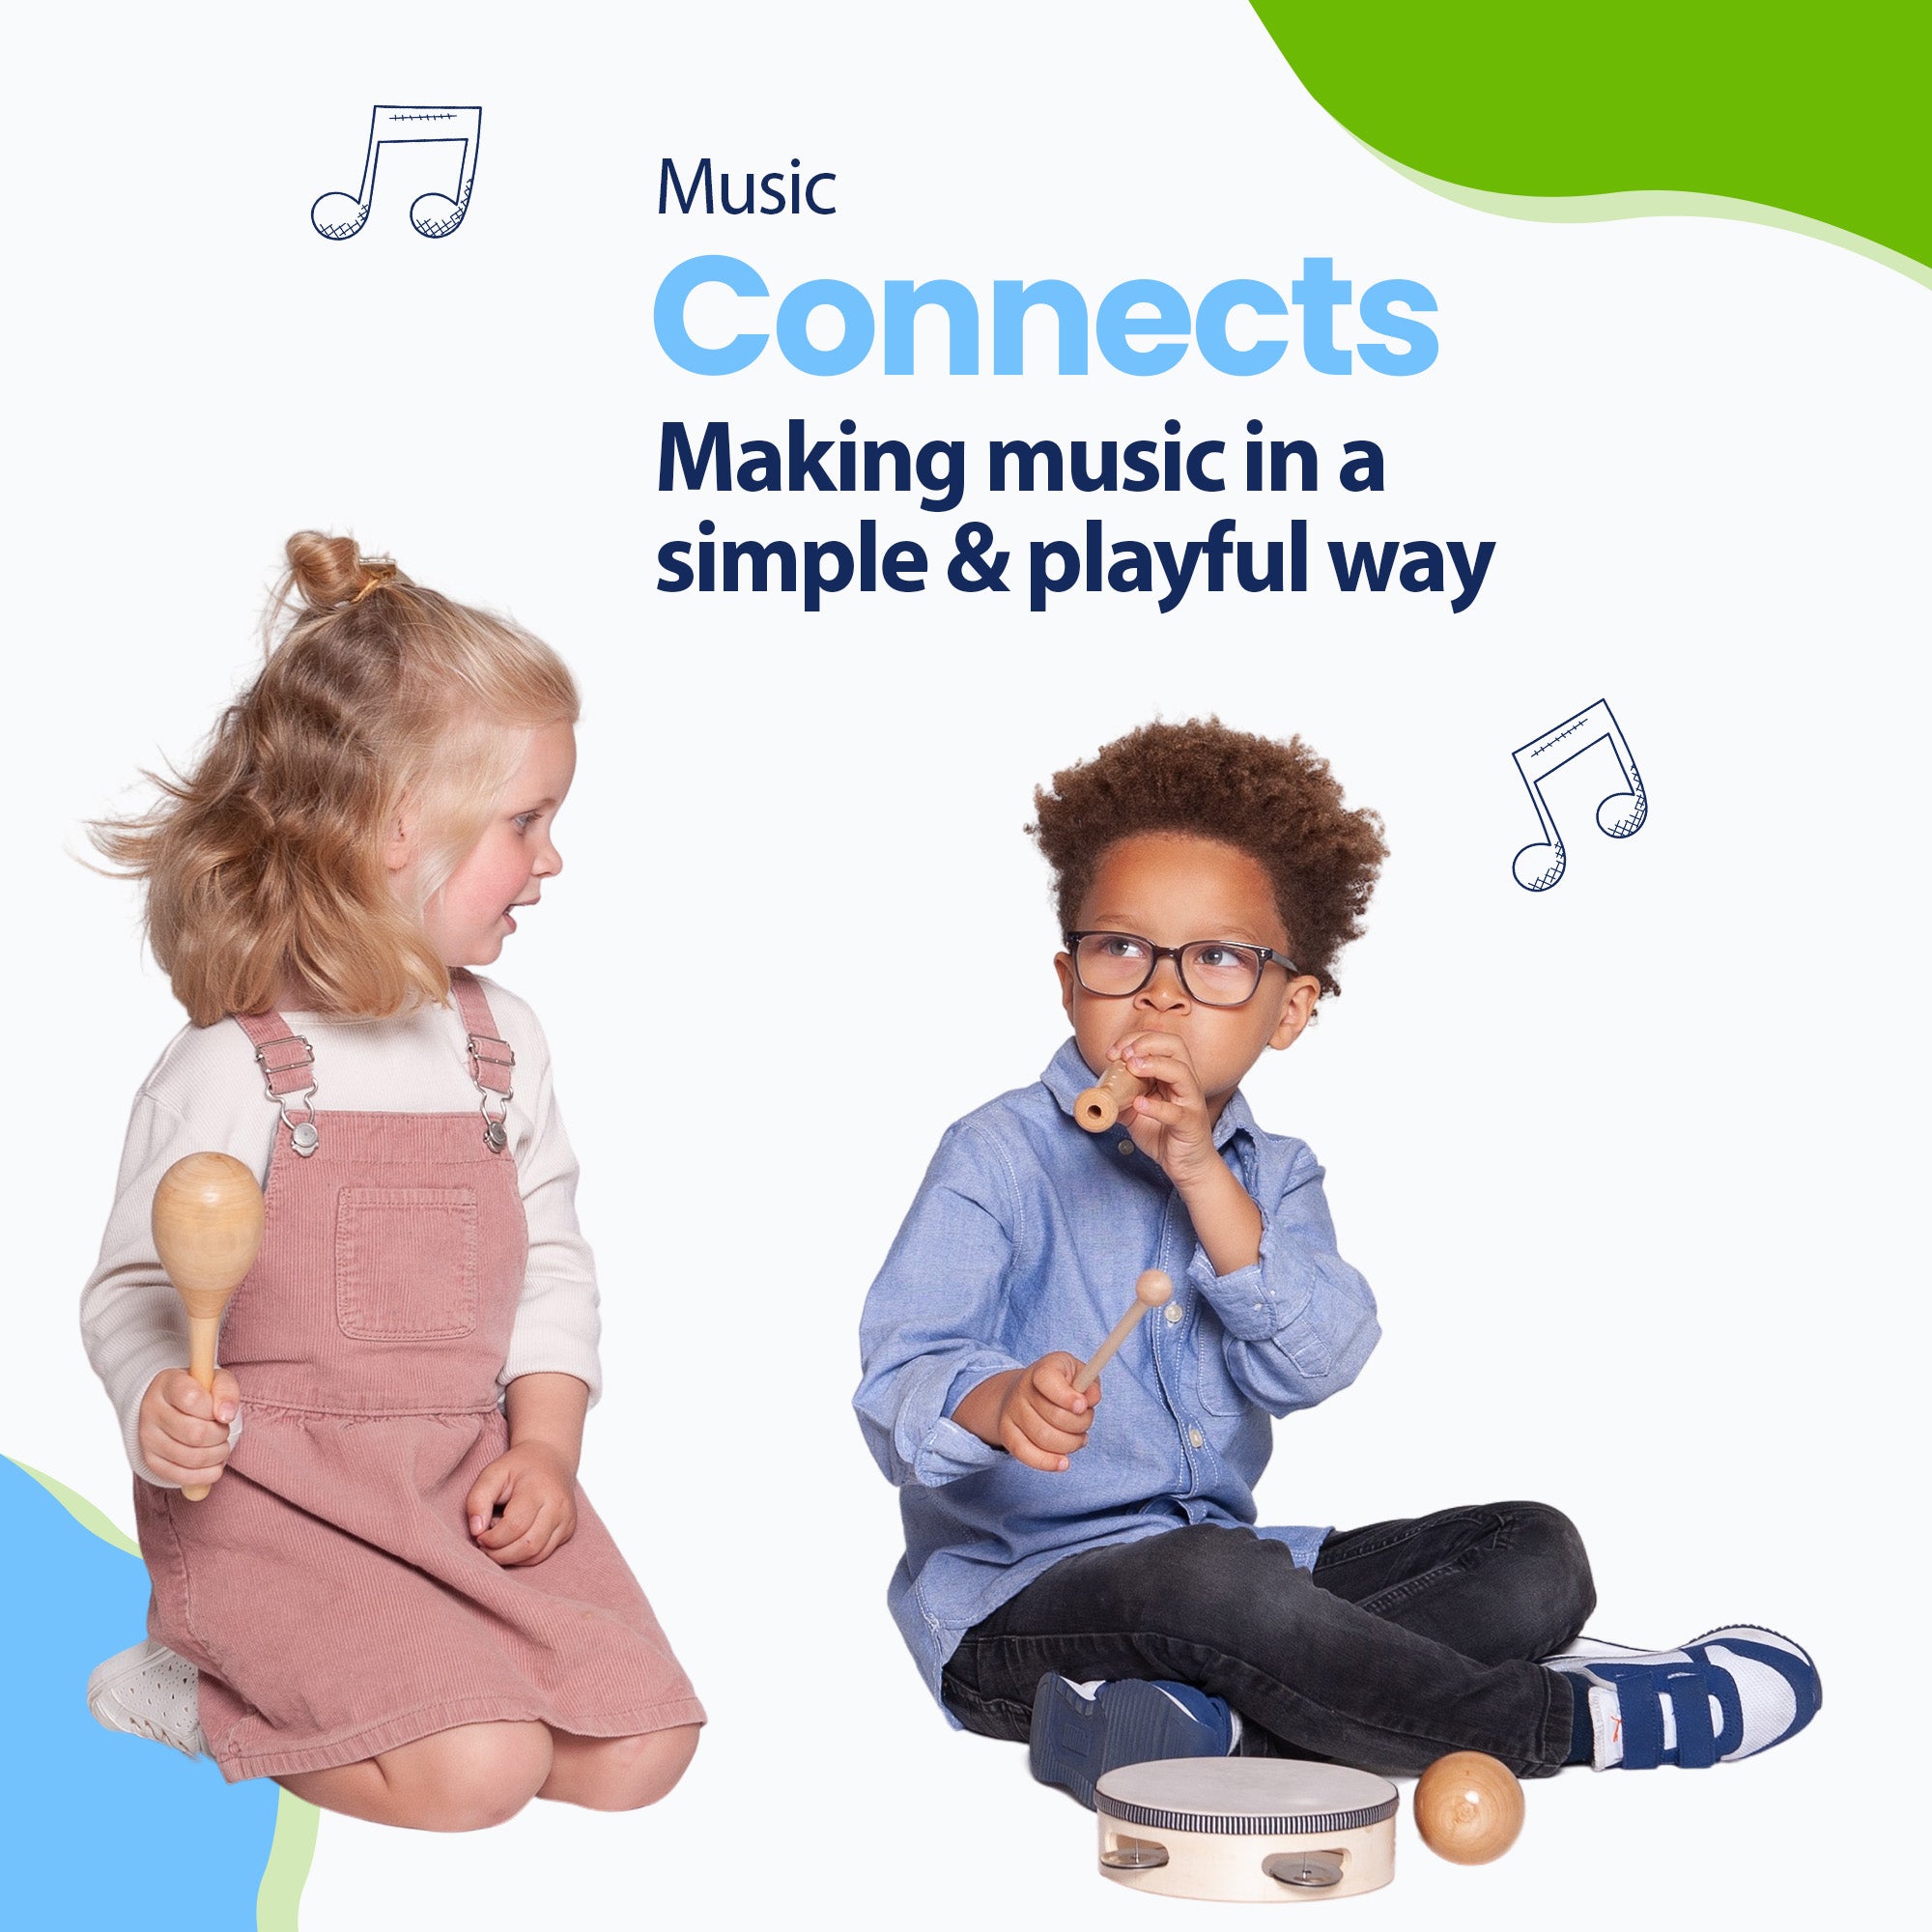 La música conecta a los adultos pero también a los niños. Enseña a tu hijo a jugar juntos y a desarrollar su talento musical